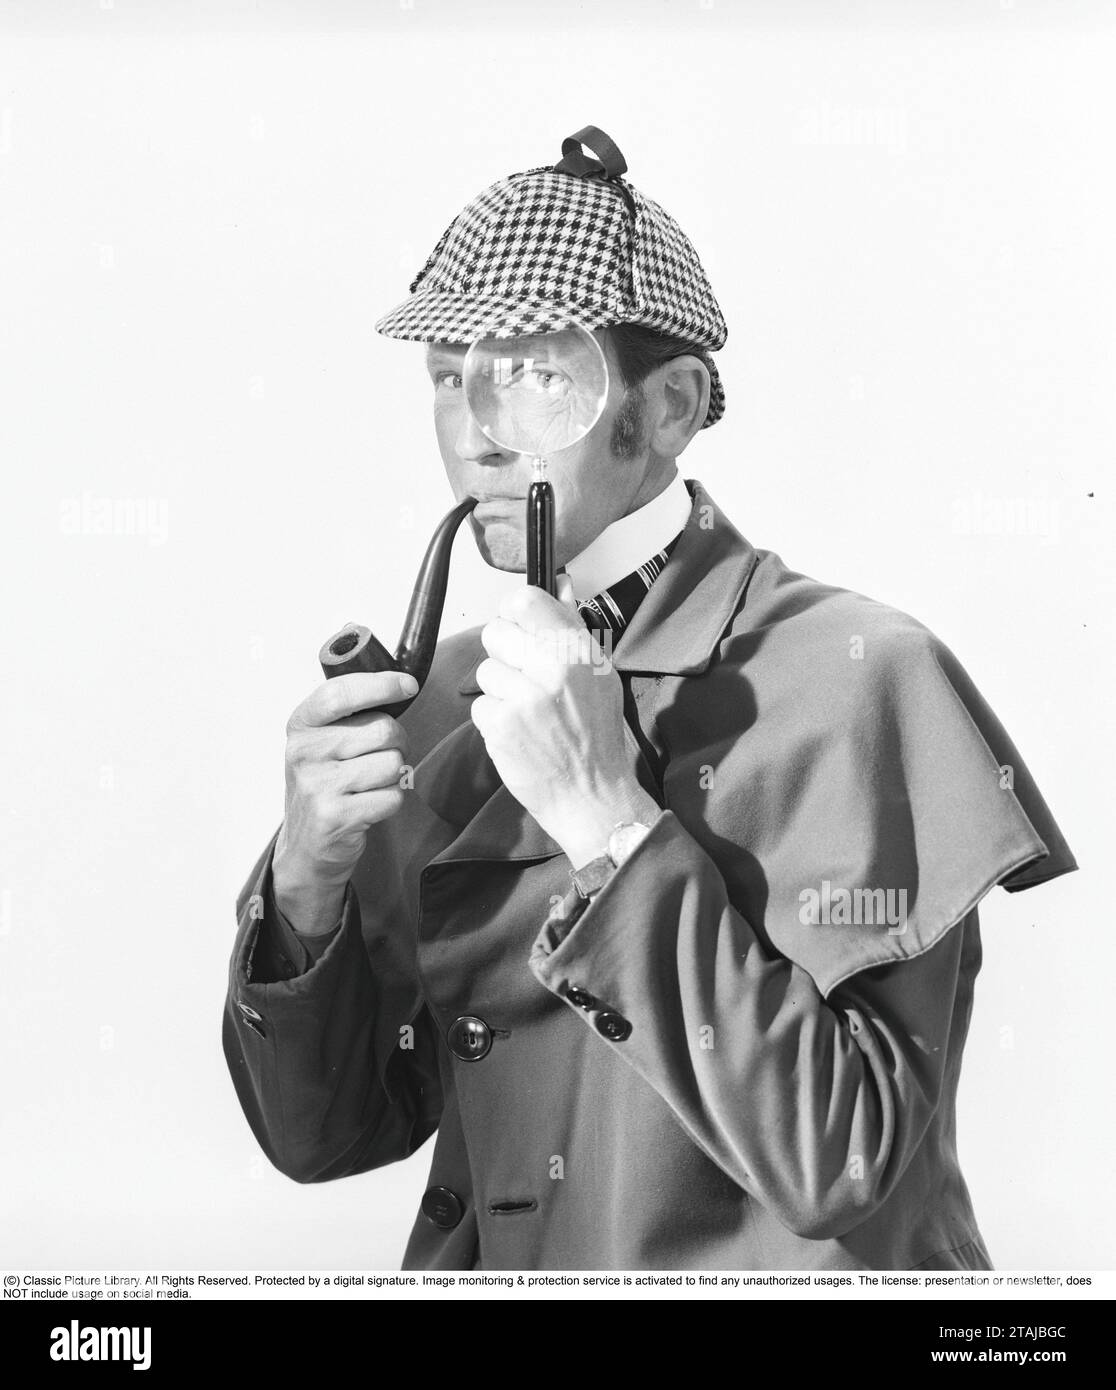 Detective spielen. Ein Mann in den typischen Kleidern des berühmten fiktiven Detektivs Sherlock Holmes schaut durch eine Lupe in die Kamera. Stockfoto